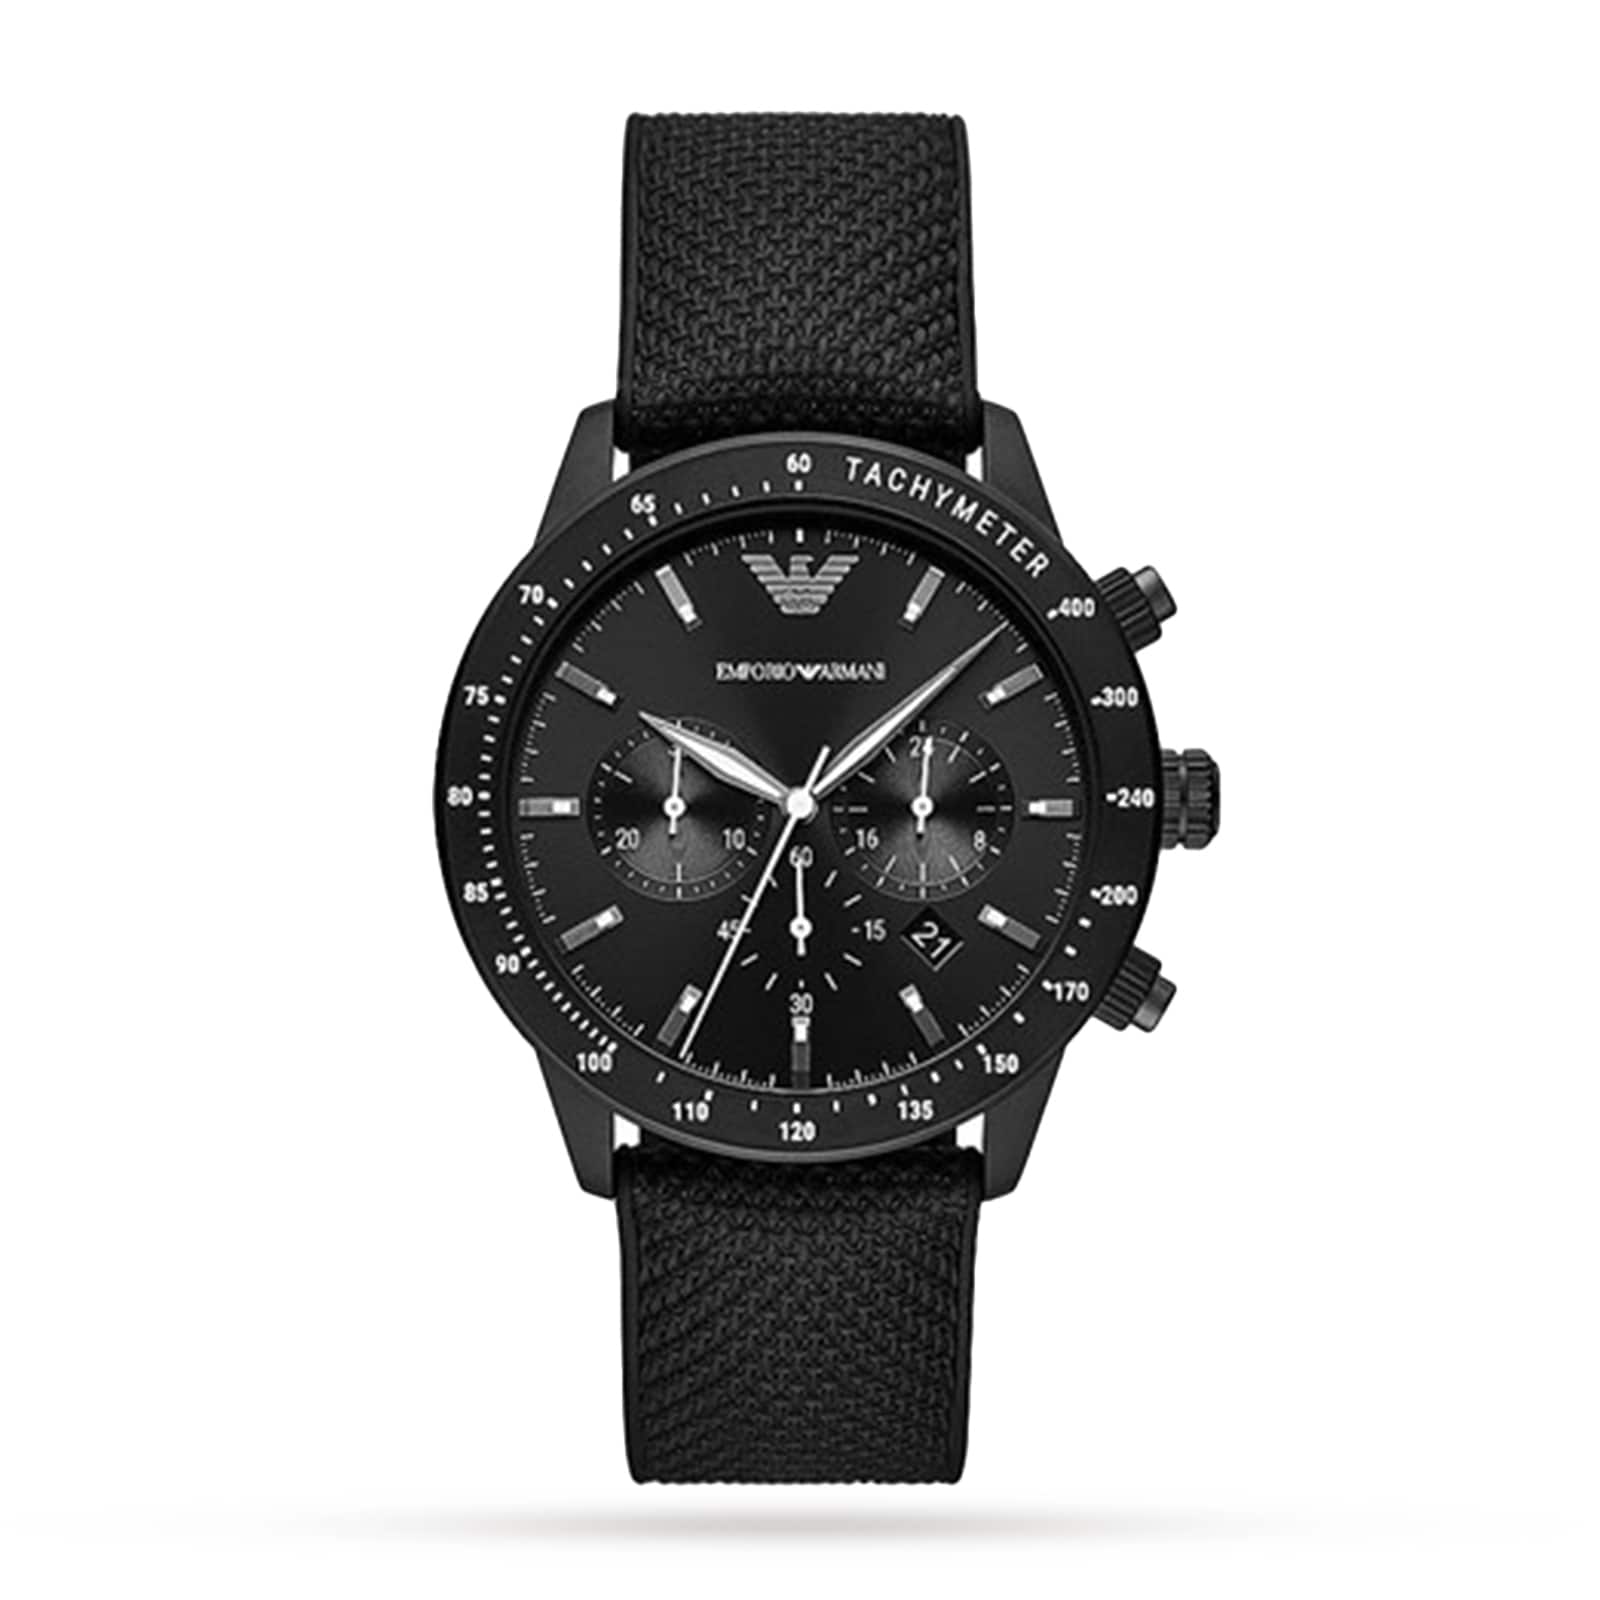 Womens Watches | Watches | Emporio Armani | Brands | Goldsmiths